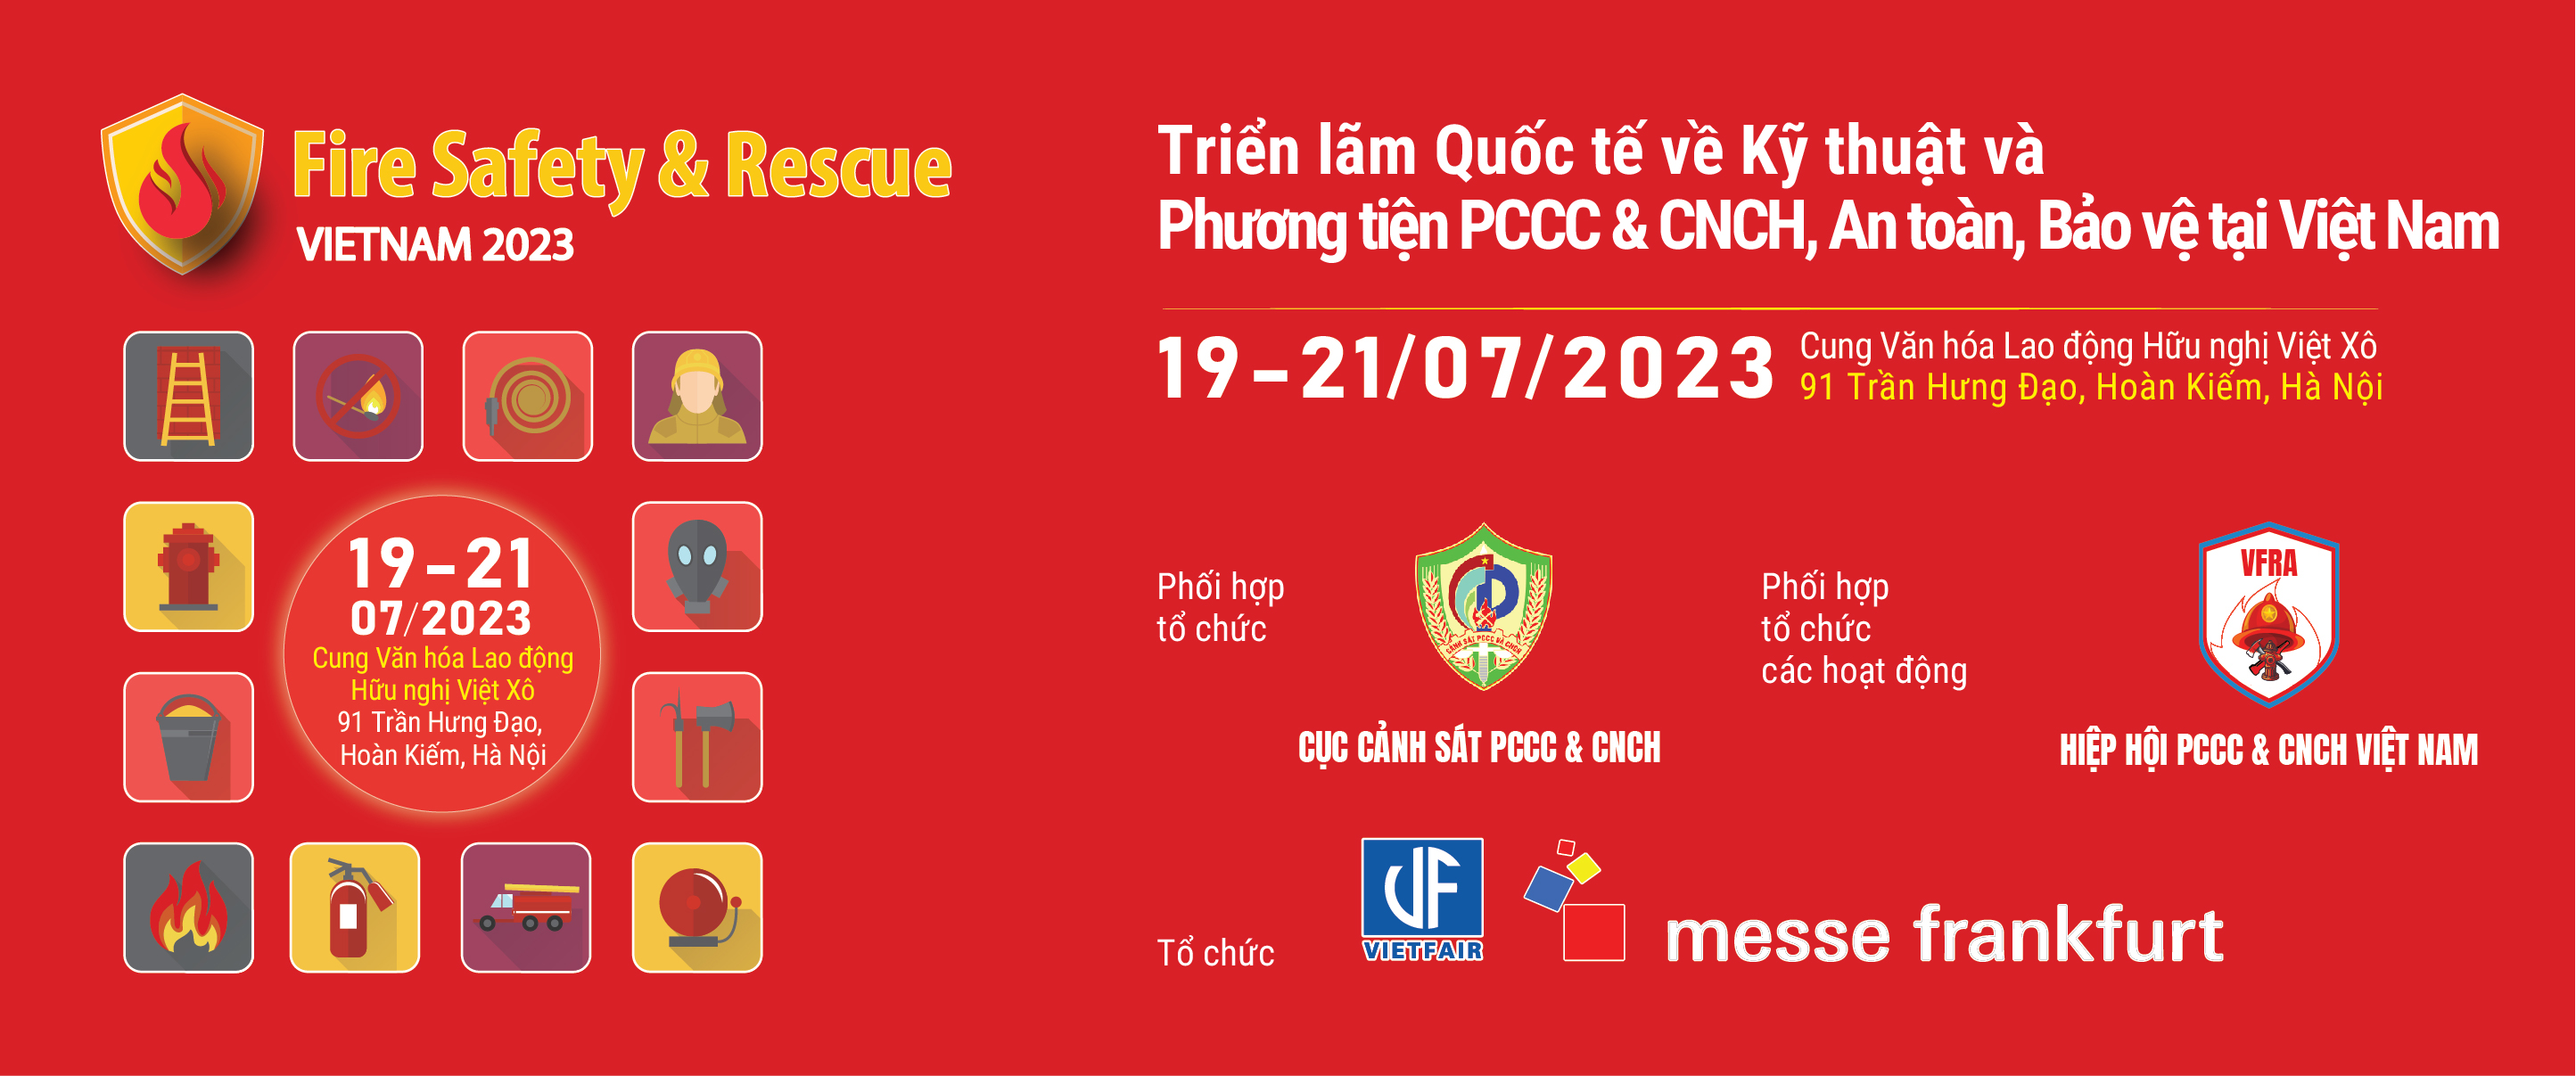 Thời gian và địa điểm diễn ra triển lãm PCCC Hà Nội